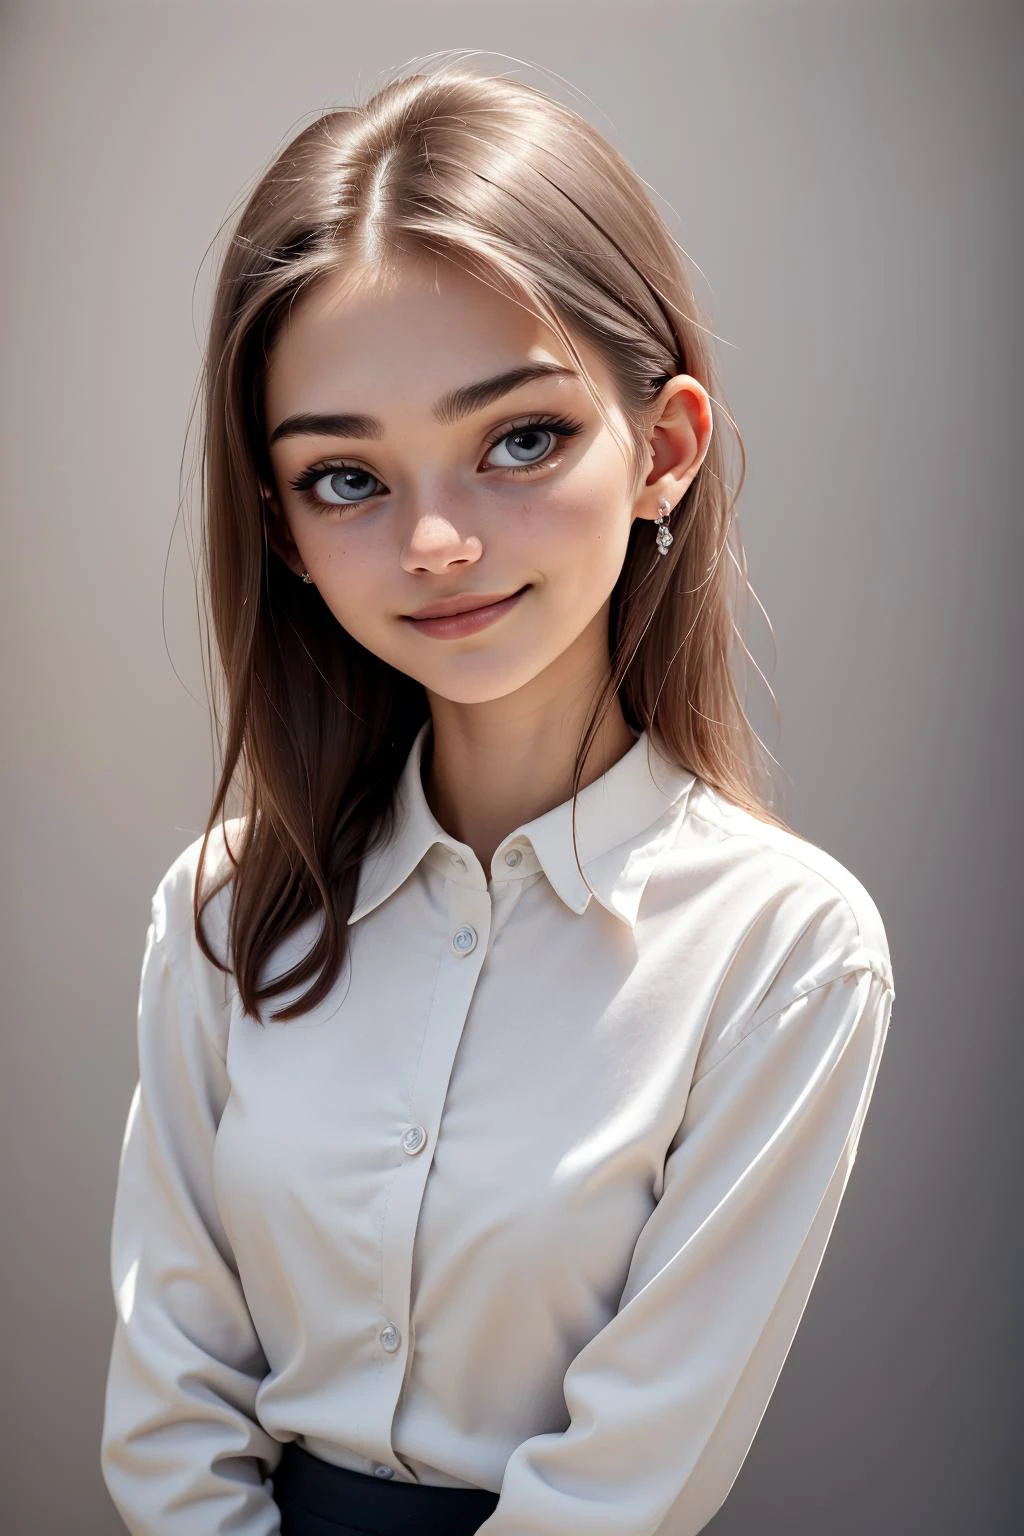 Foto einer 18-jährigen Frau, (einfacher Hintergrund:1.3), epiC35mm, Filmkorn, Wollhemd, kleines Lächeln, GeorgiaEllenwood
photo of perfecteyes Augen, perfecteyes Augen